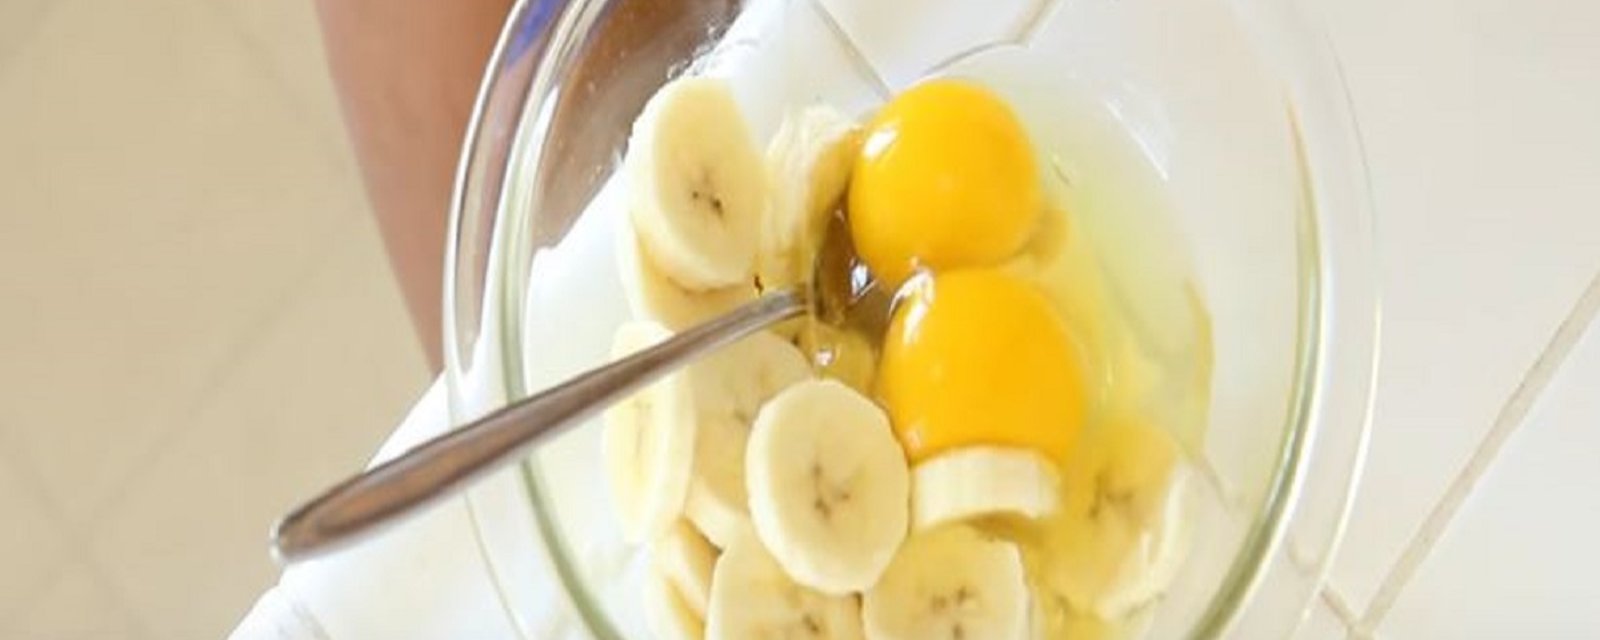 Dans un petit bol, elle casse un oeuf pour ensuite y ajouter des morceaux de banane afin de créer un déjeuner vraiment délicieux